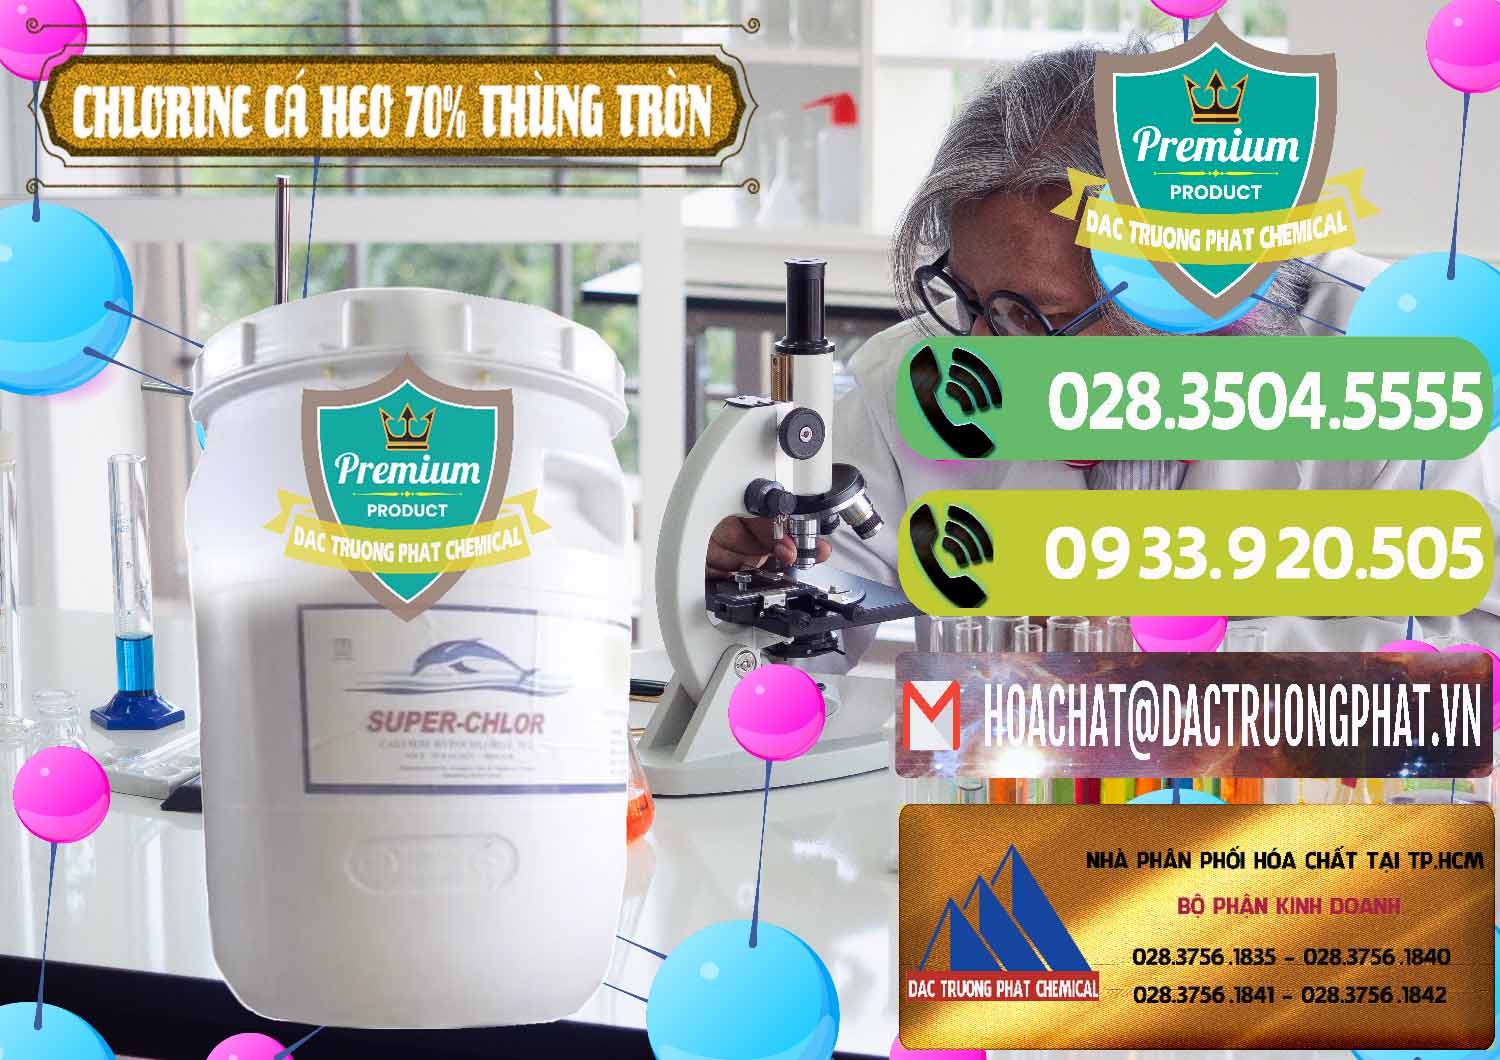 Đơn vị bán ( cung ứng ) Clorin - Chlorine Cá Heo 70% Super Chlor Thùng Tròn Nắp Trắng Trung Quốc China - 0239 - Cty chuyên kinh doanh ( cung cấp ) hóa chất tại TP.HCM - hoachatmientay.vn